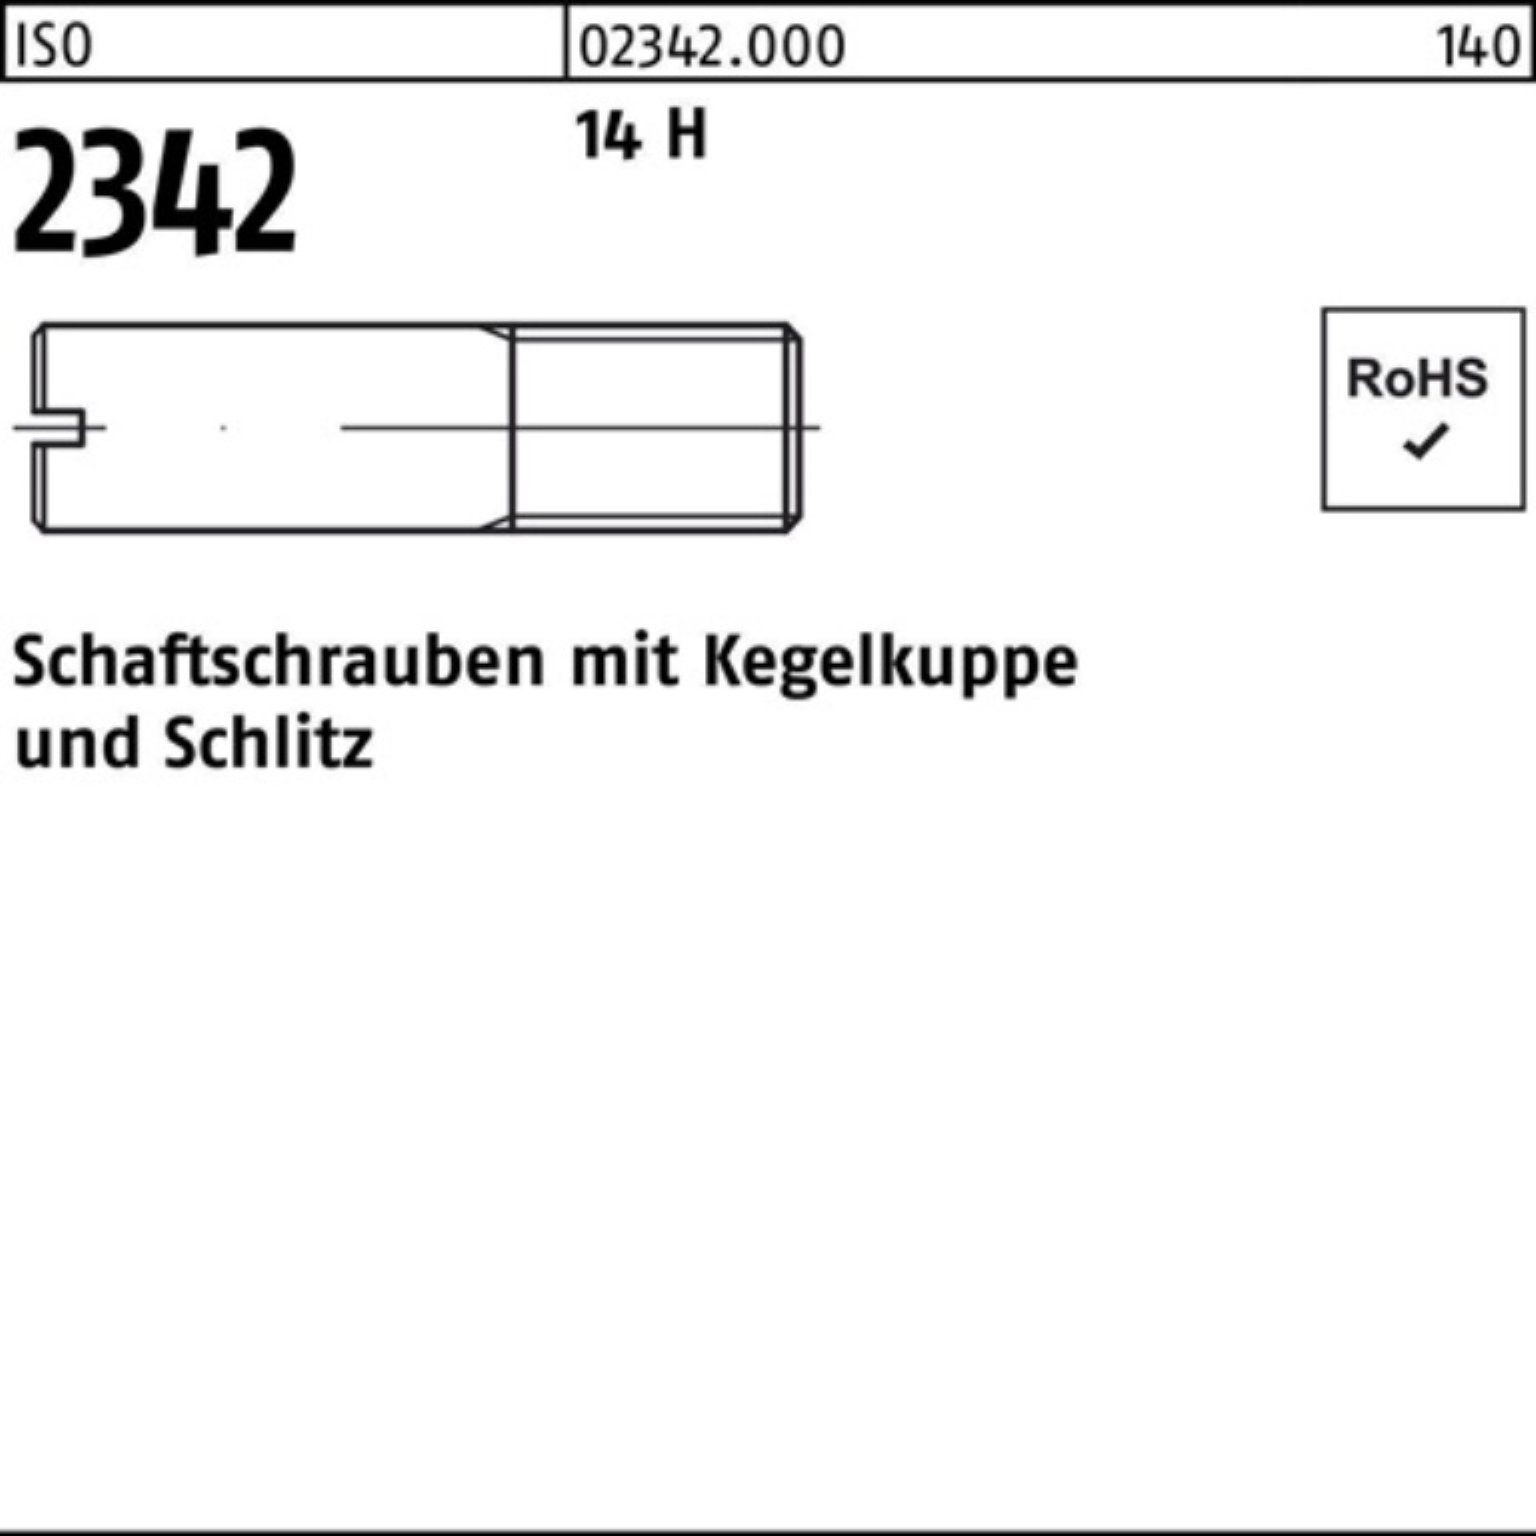 Reyher Schraube 100er Pack Schaftschraube ISO 2342 Kegelkuppe/Schlitz M4x 20 14 H 100